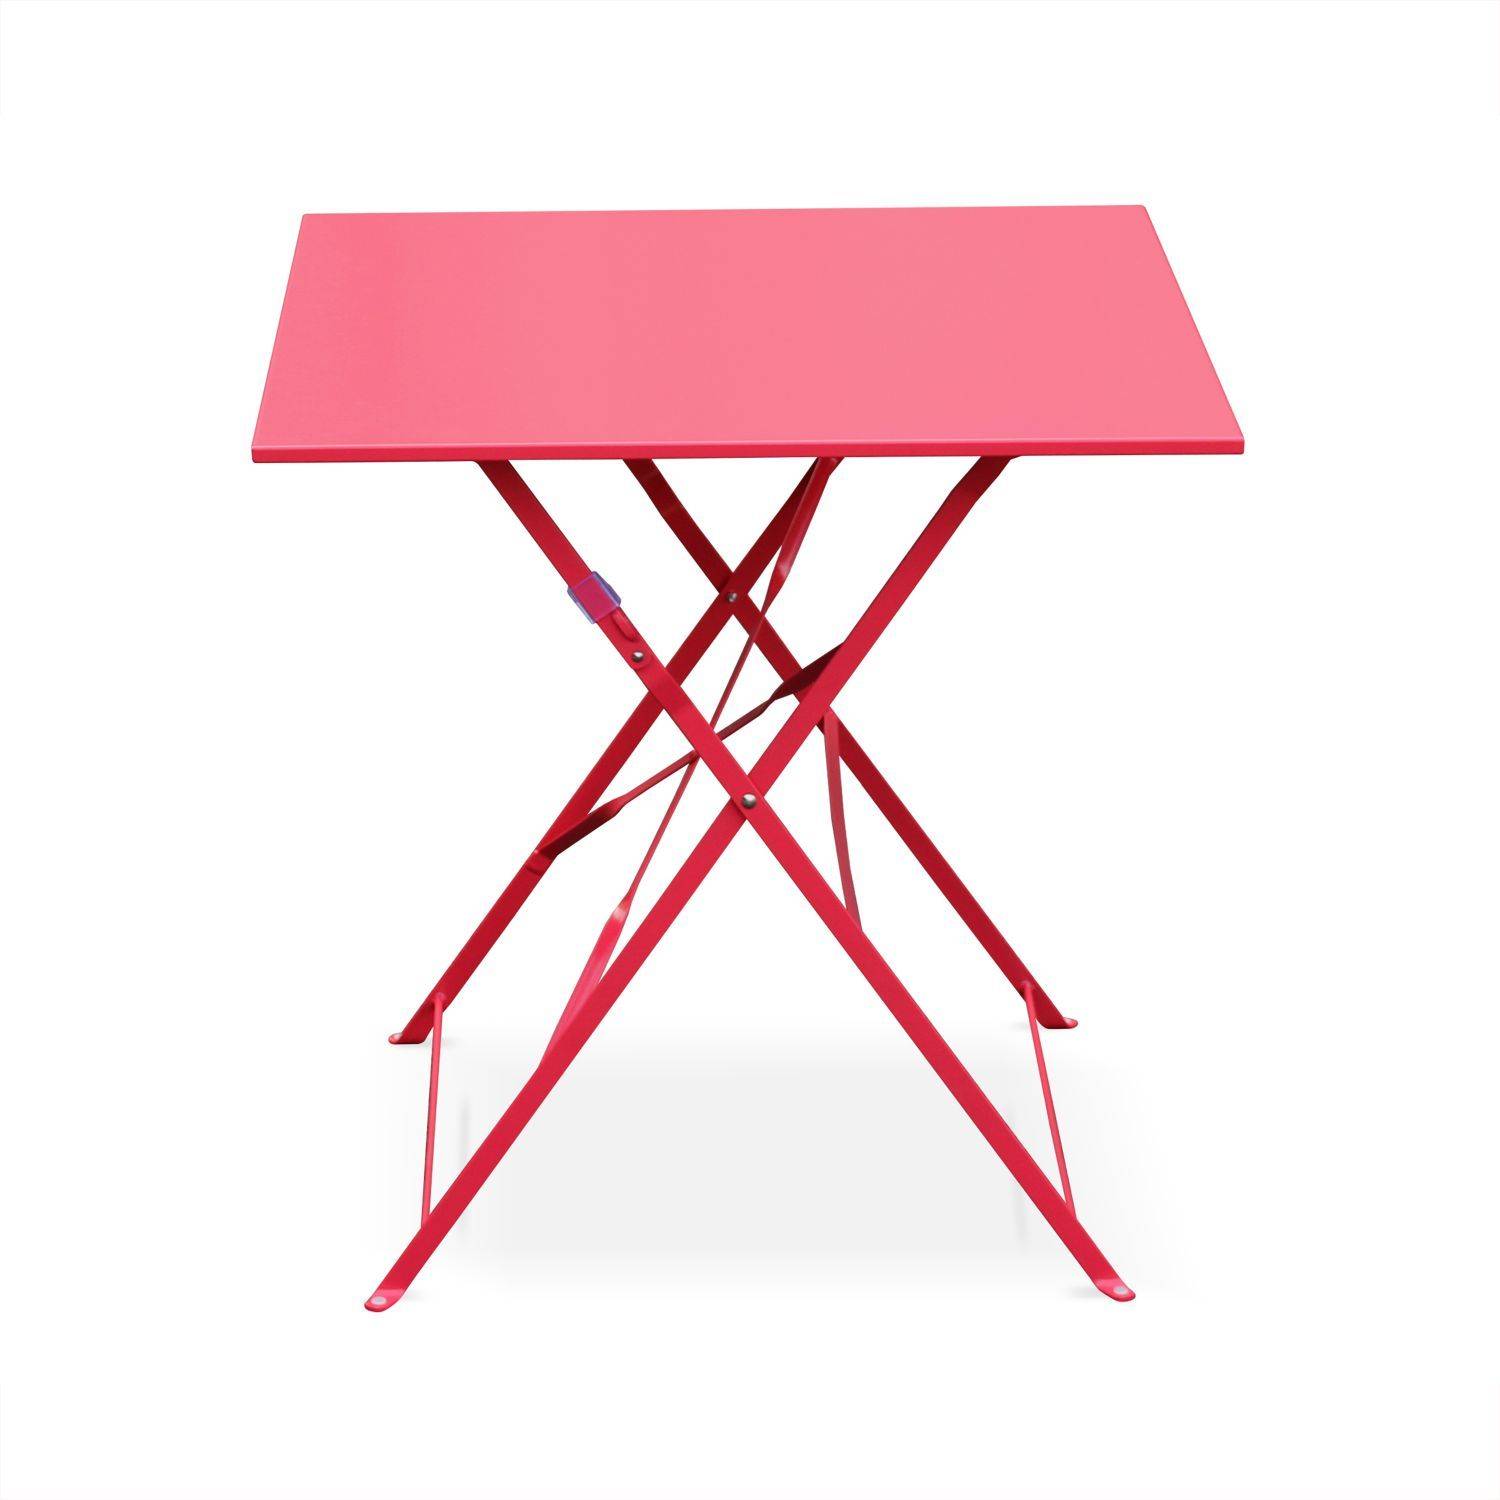 Klappbare Bistro-Gartenmöbel - Emilia rot - Quadratischer Tisch 70x70cm mit zwei Klappstühlen aus pulverbeschichtetem Stahl Photo3